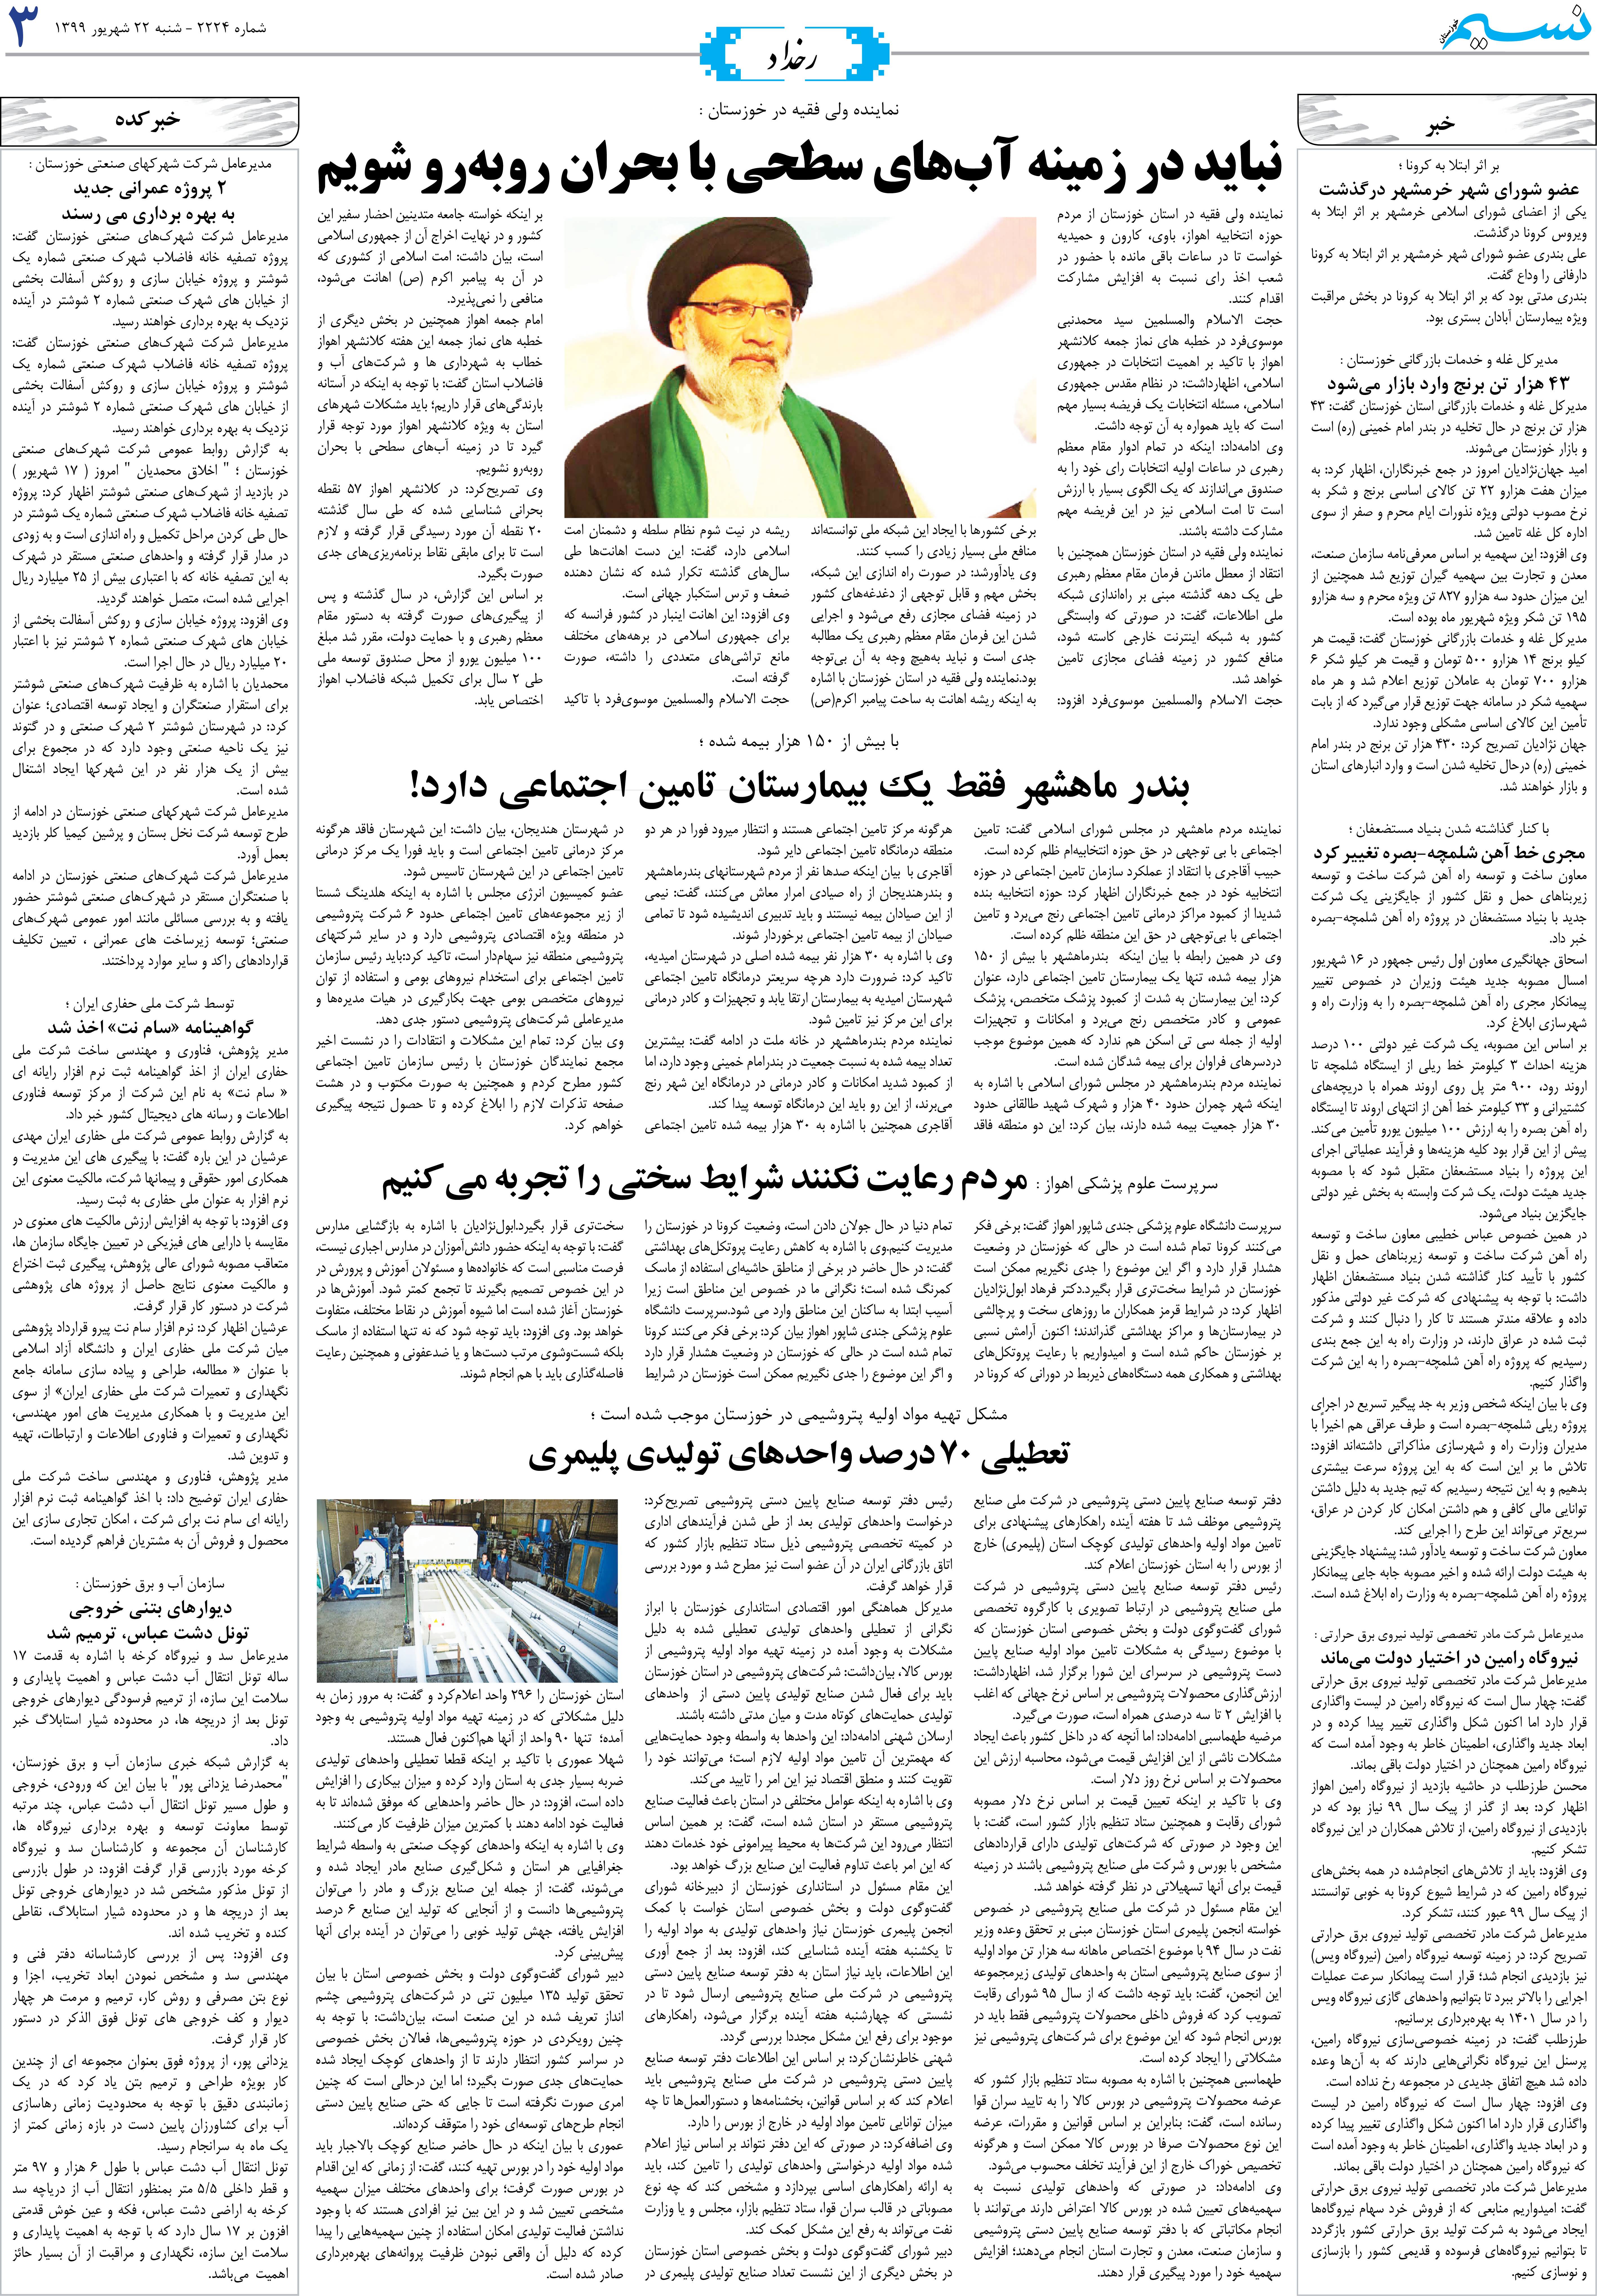 صفحه رخداد روزنامه نسیم شماره 2224